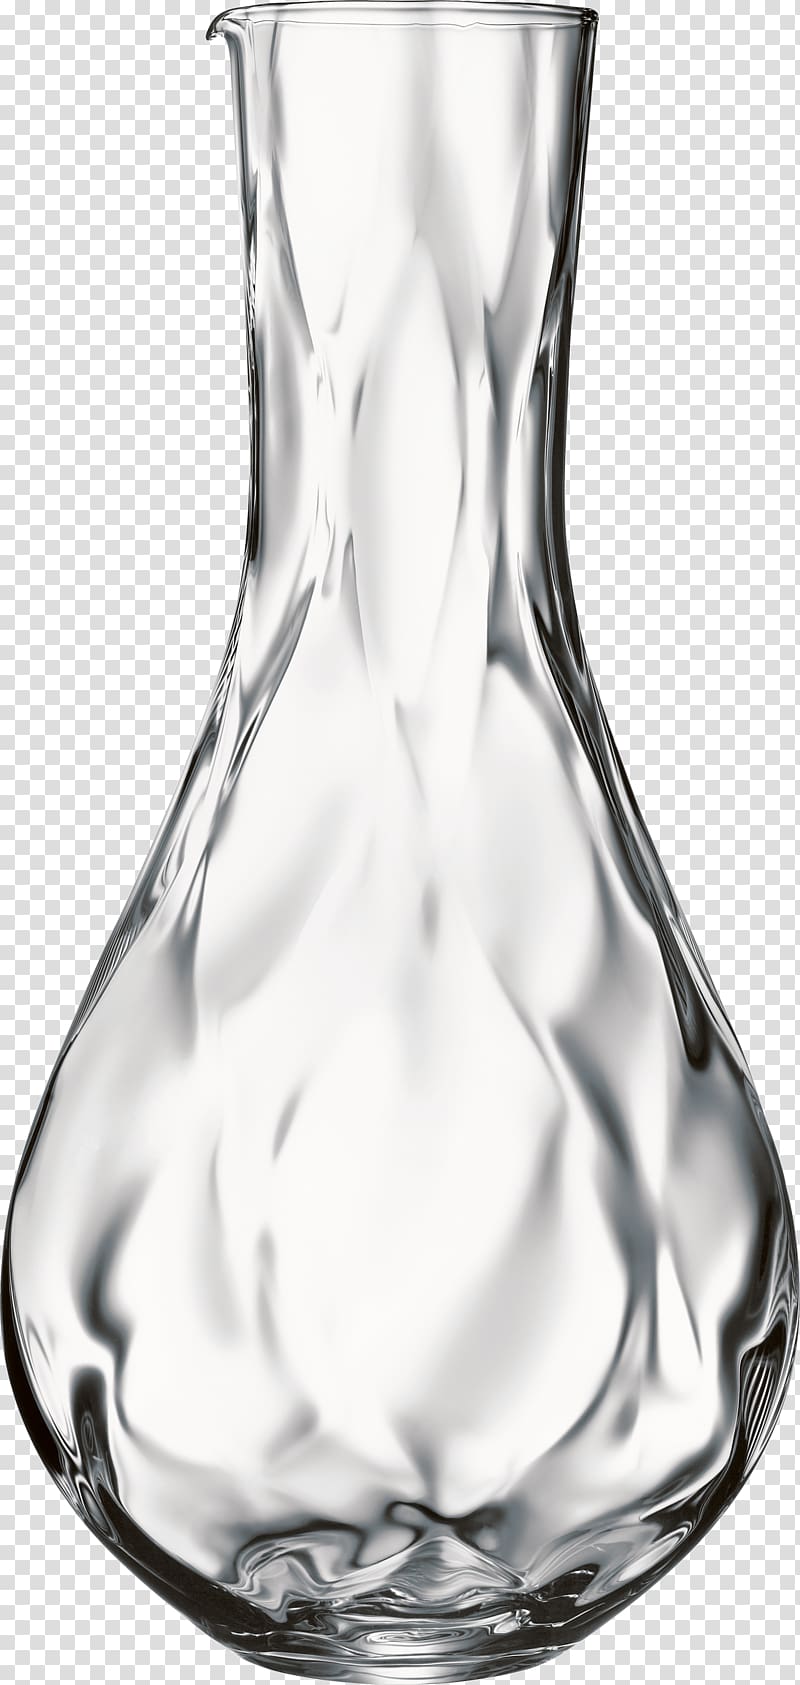 Vase Archive file, vase transparent background PNG clipart